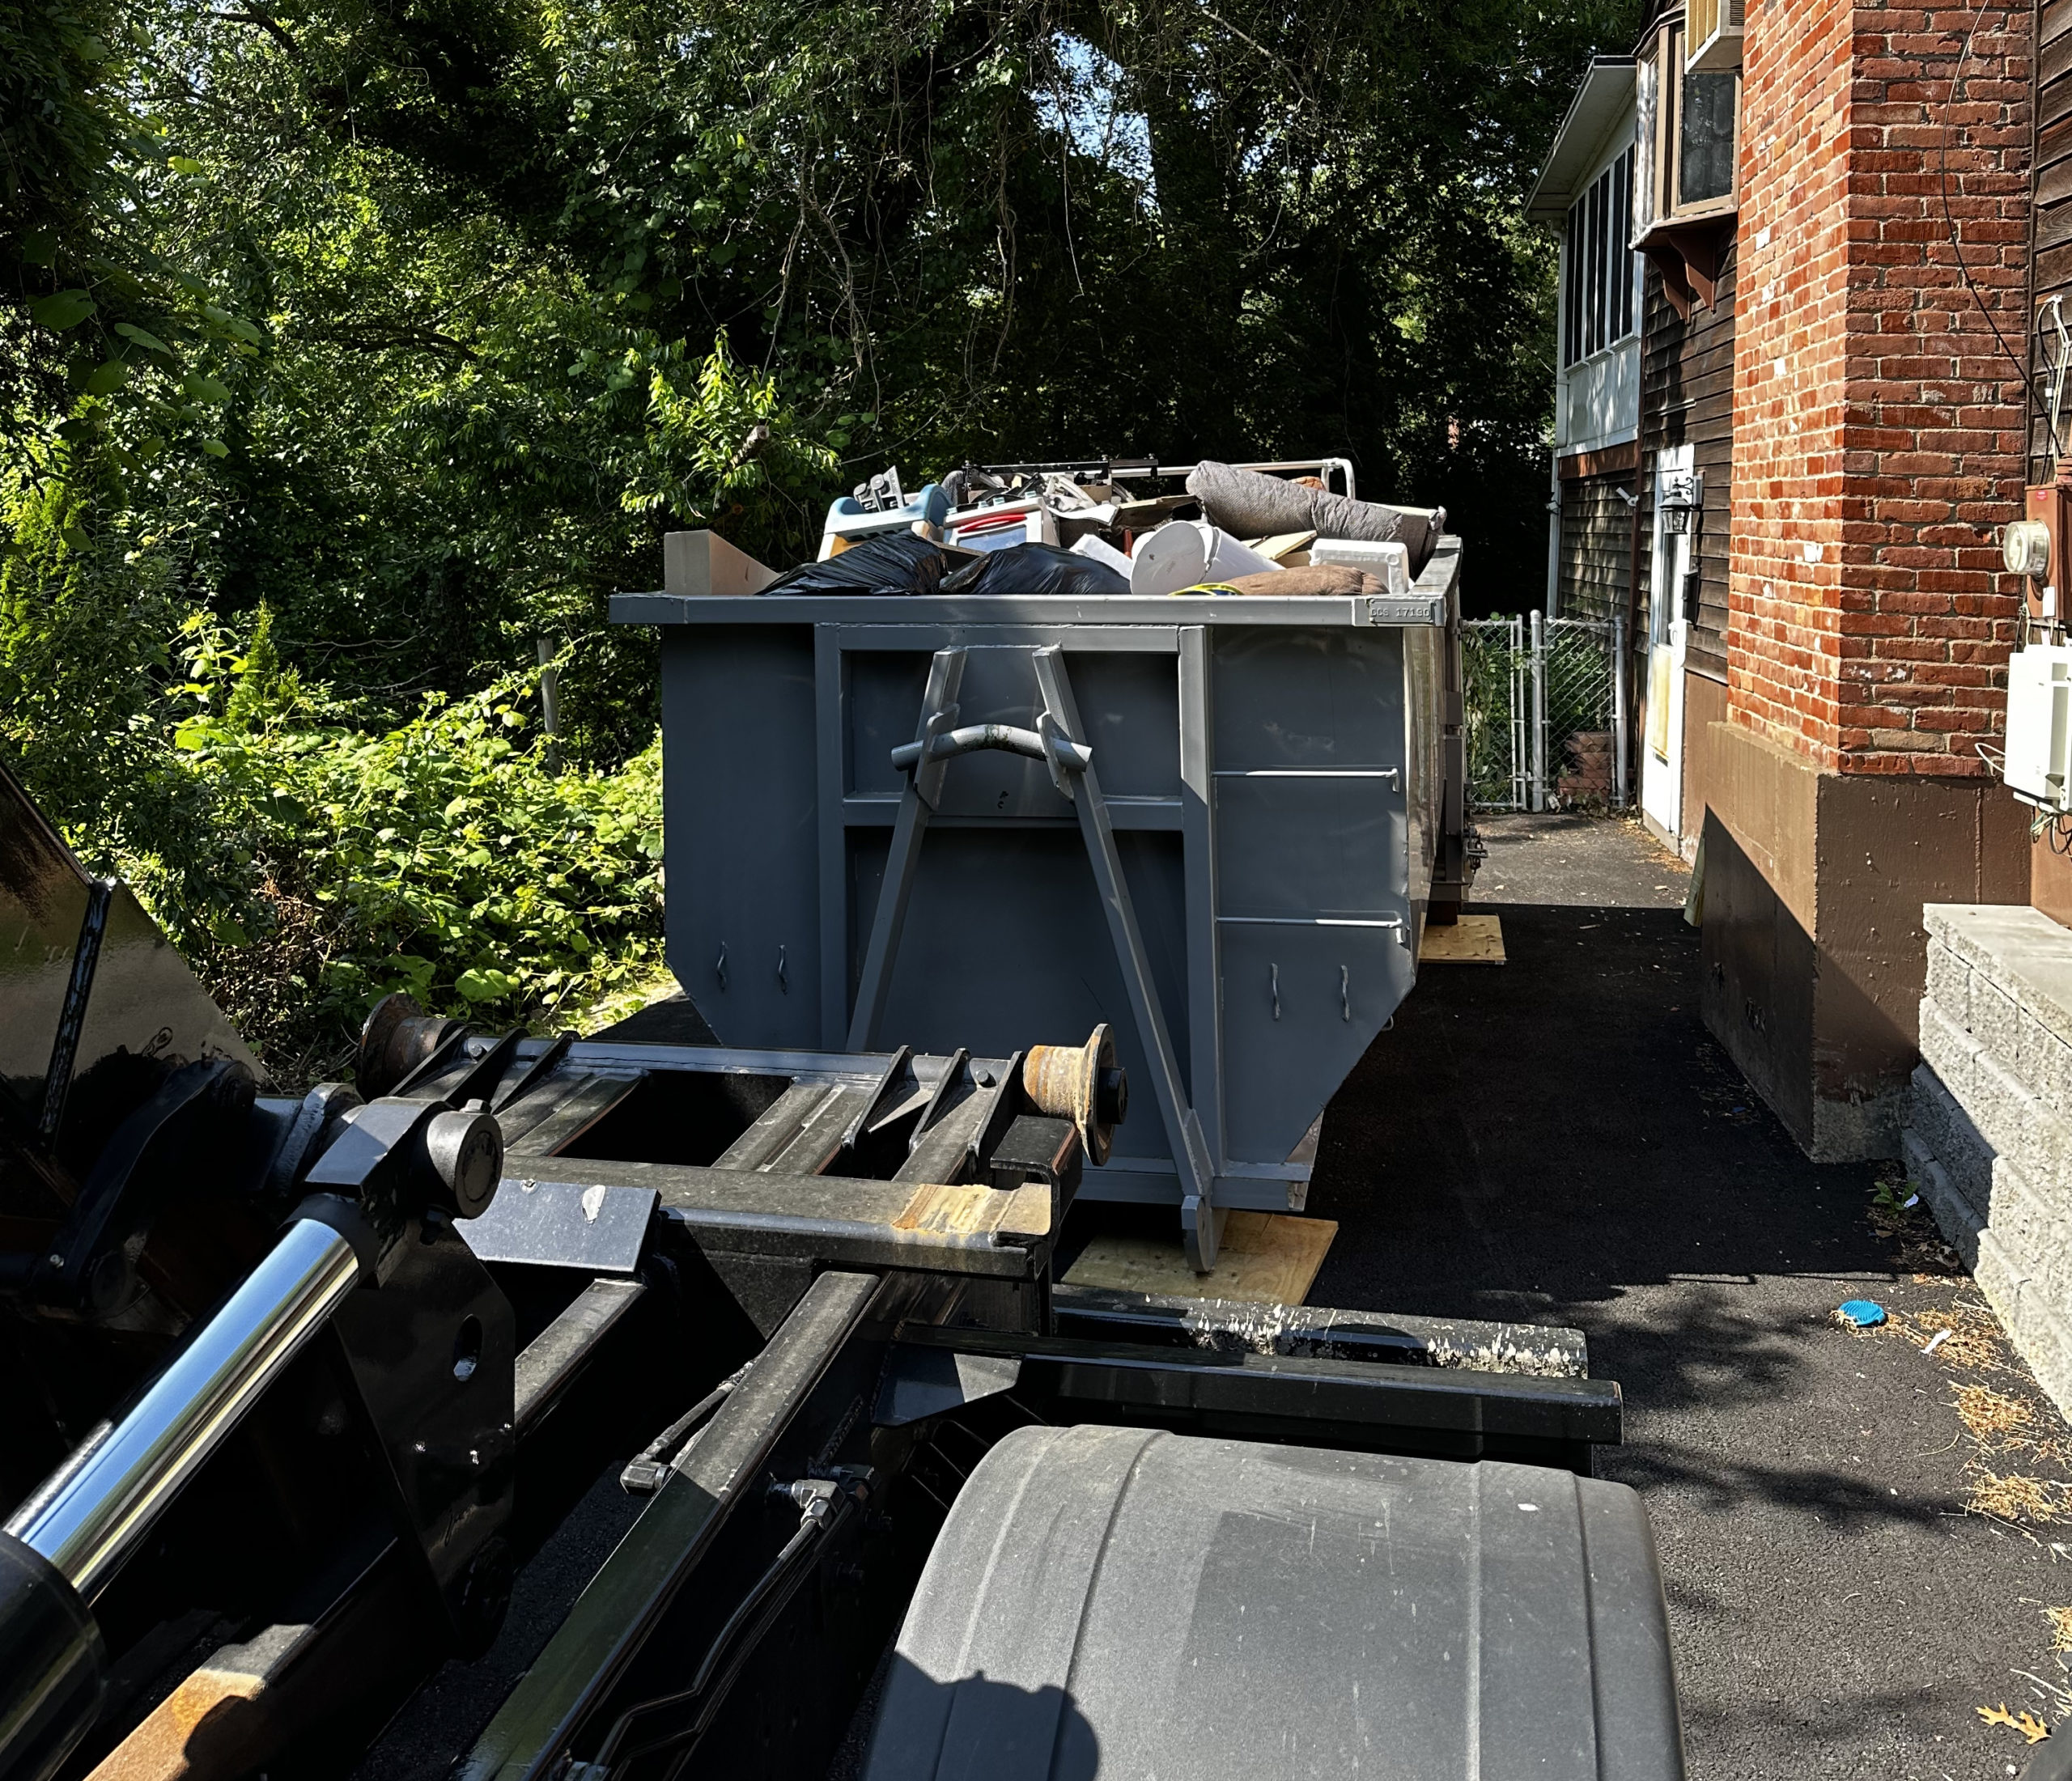 Residential Dumpster Full Of House Debris